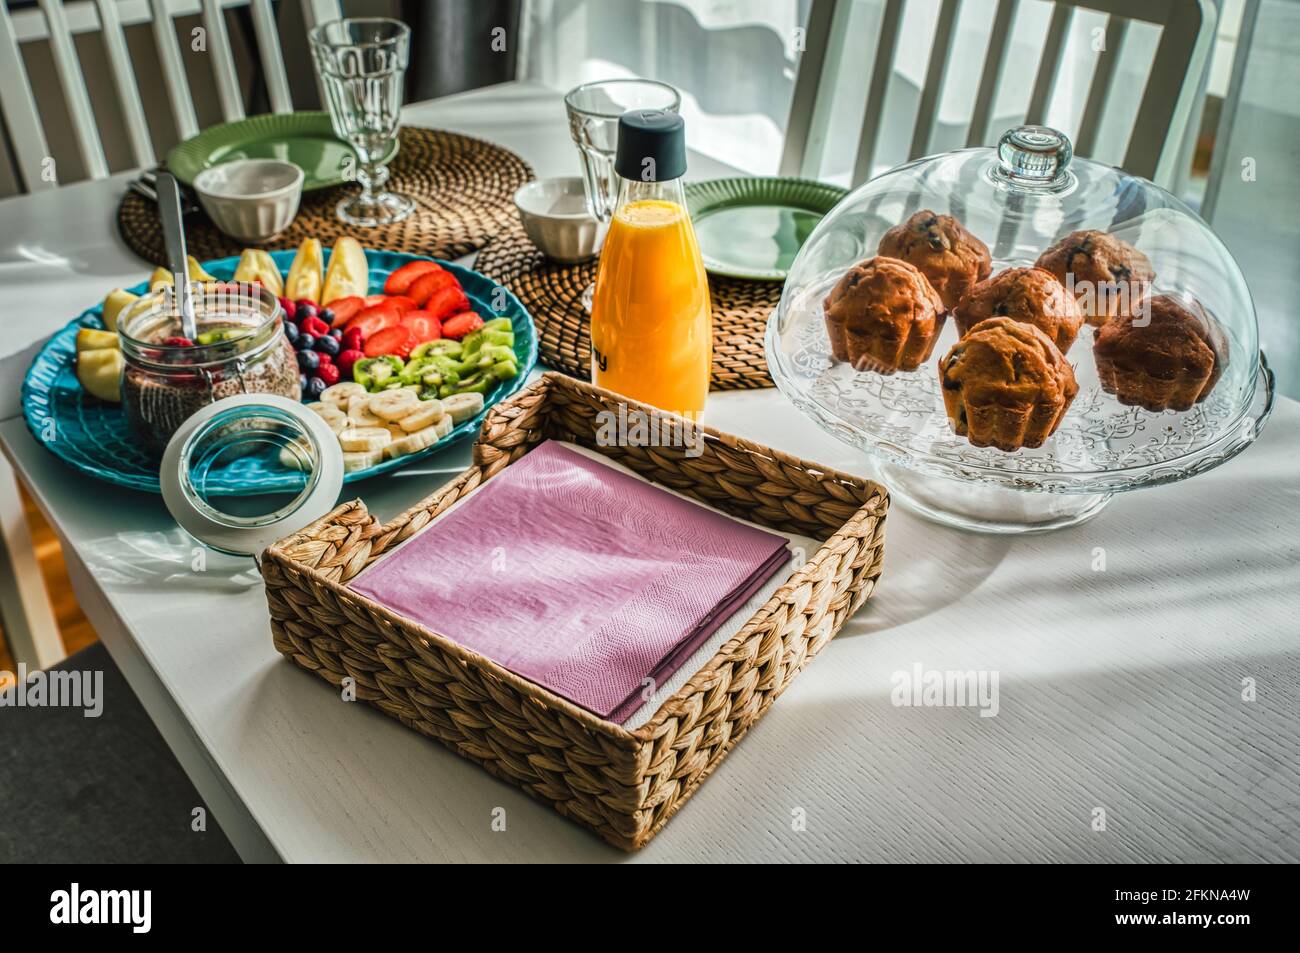 Petit-déjeuner continental le matin avec muffins, fruits de saison comme des pommes, des fraises et du pudding au chia sur une table en bois blanc avec un tapis de paille rustique Banque D'Images